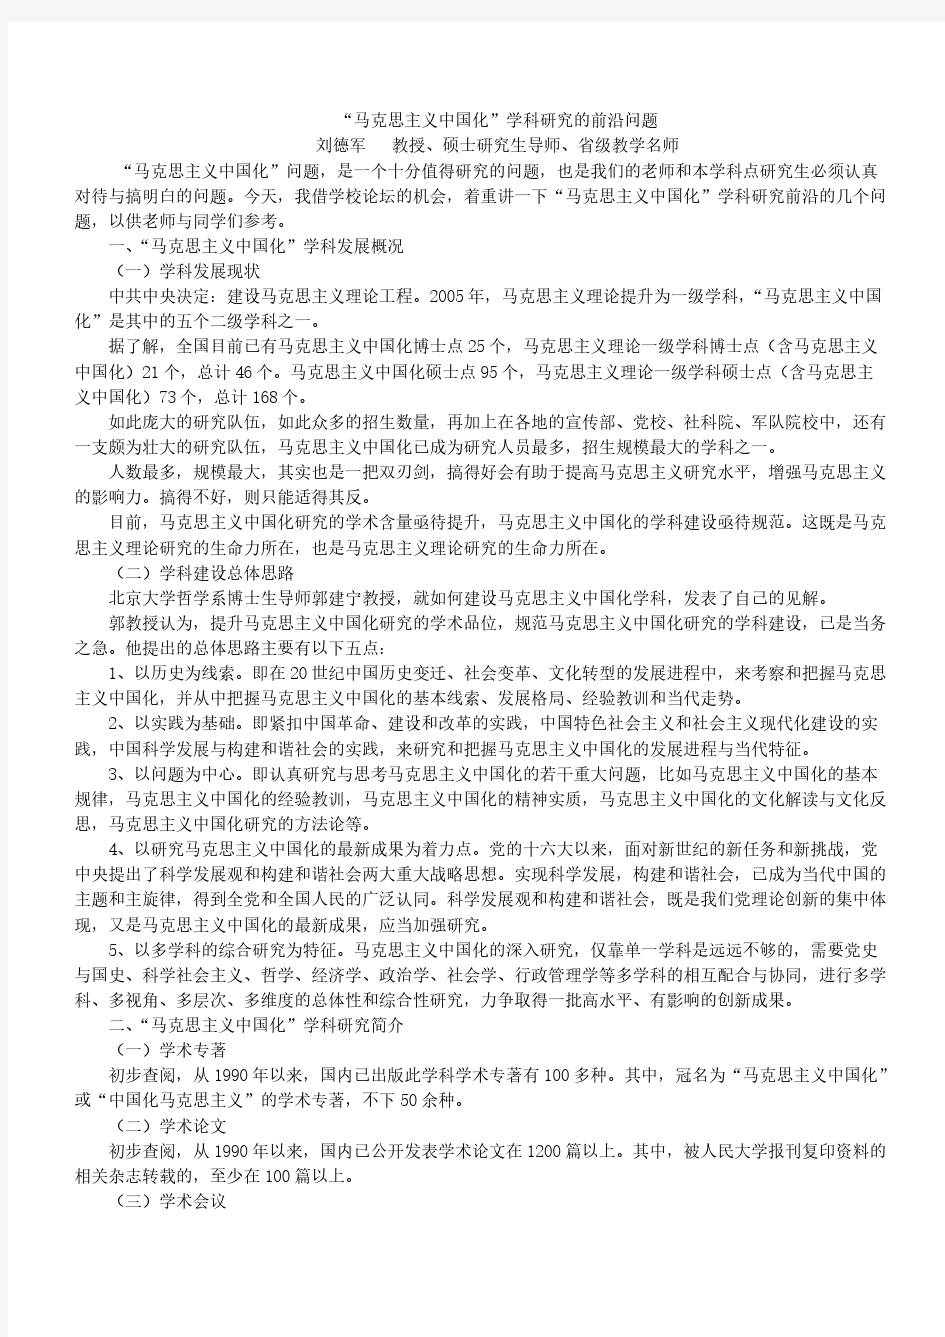 马克思主义中国化学科研究的前沿问题-推荐下载